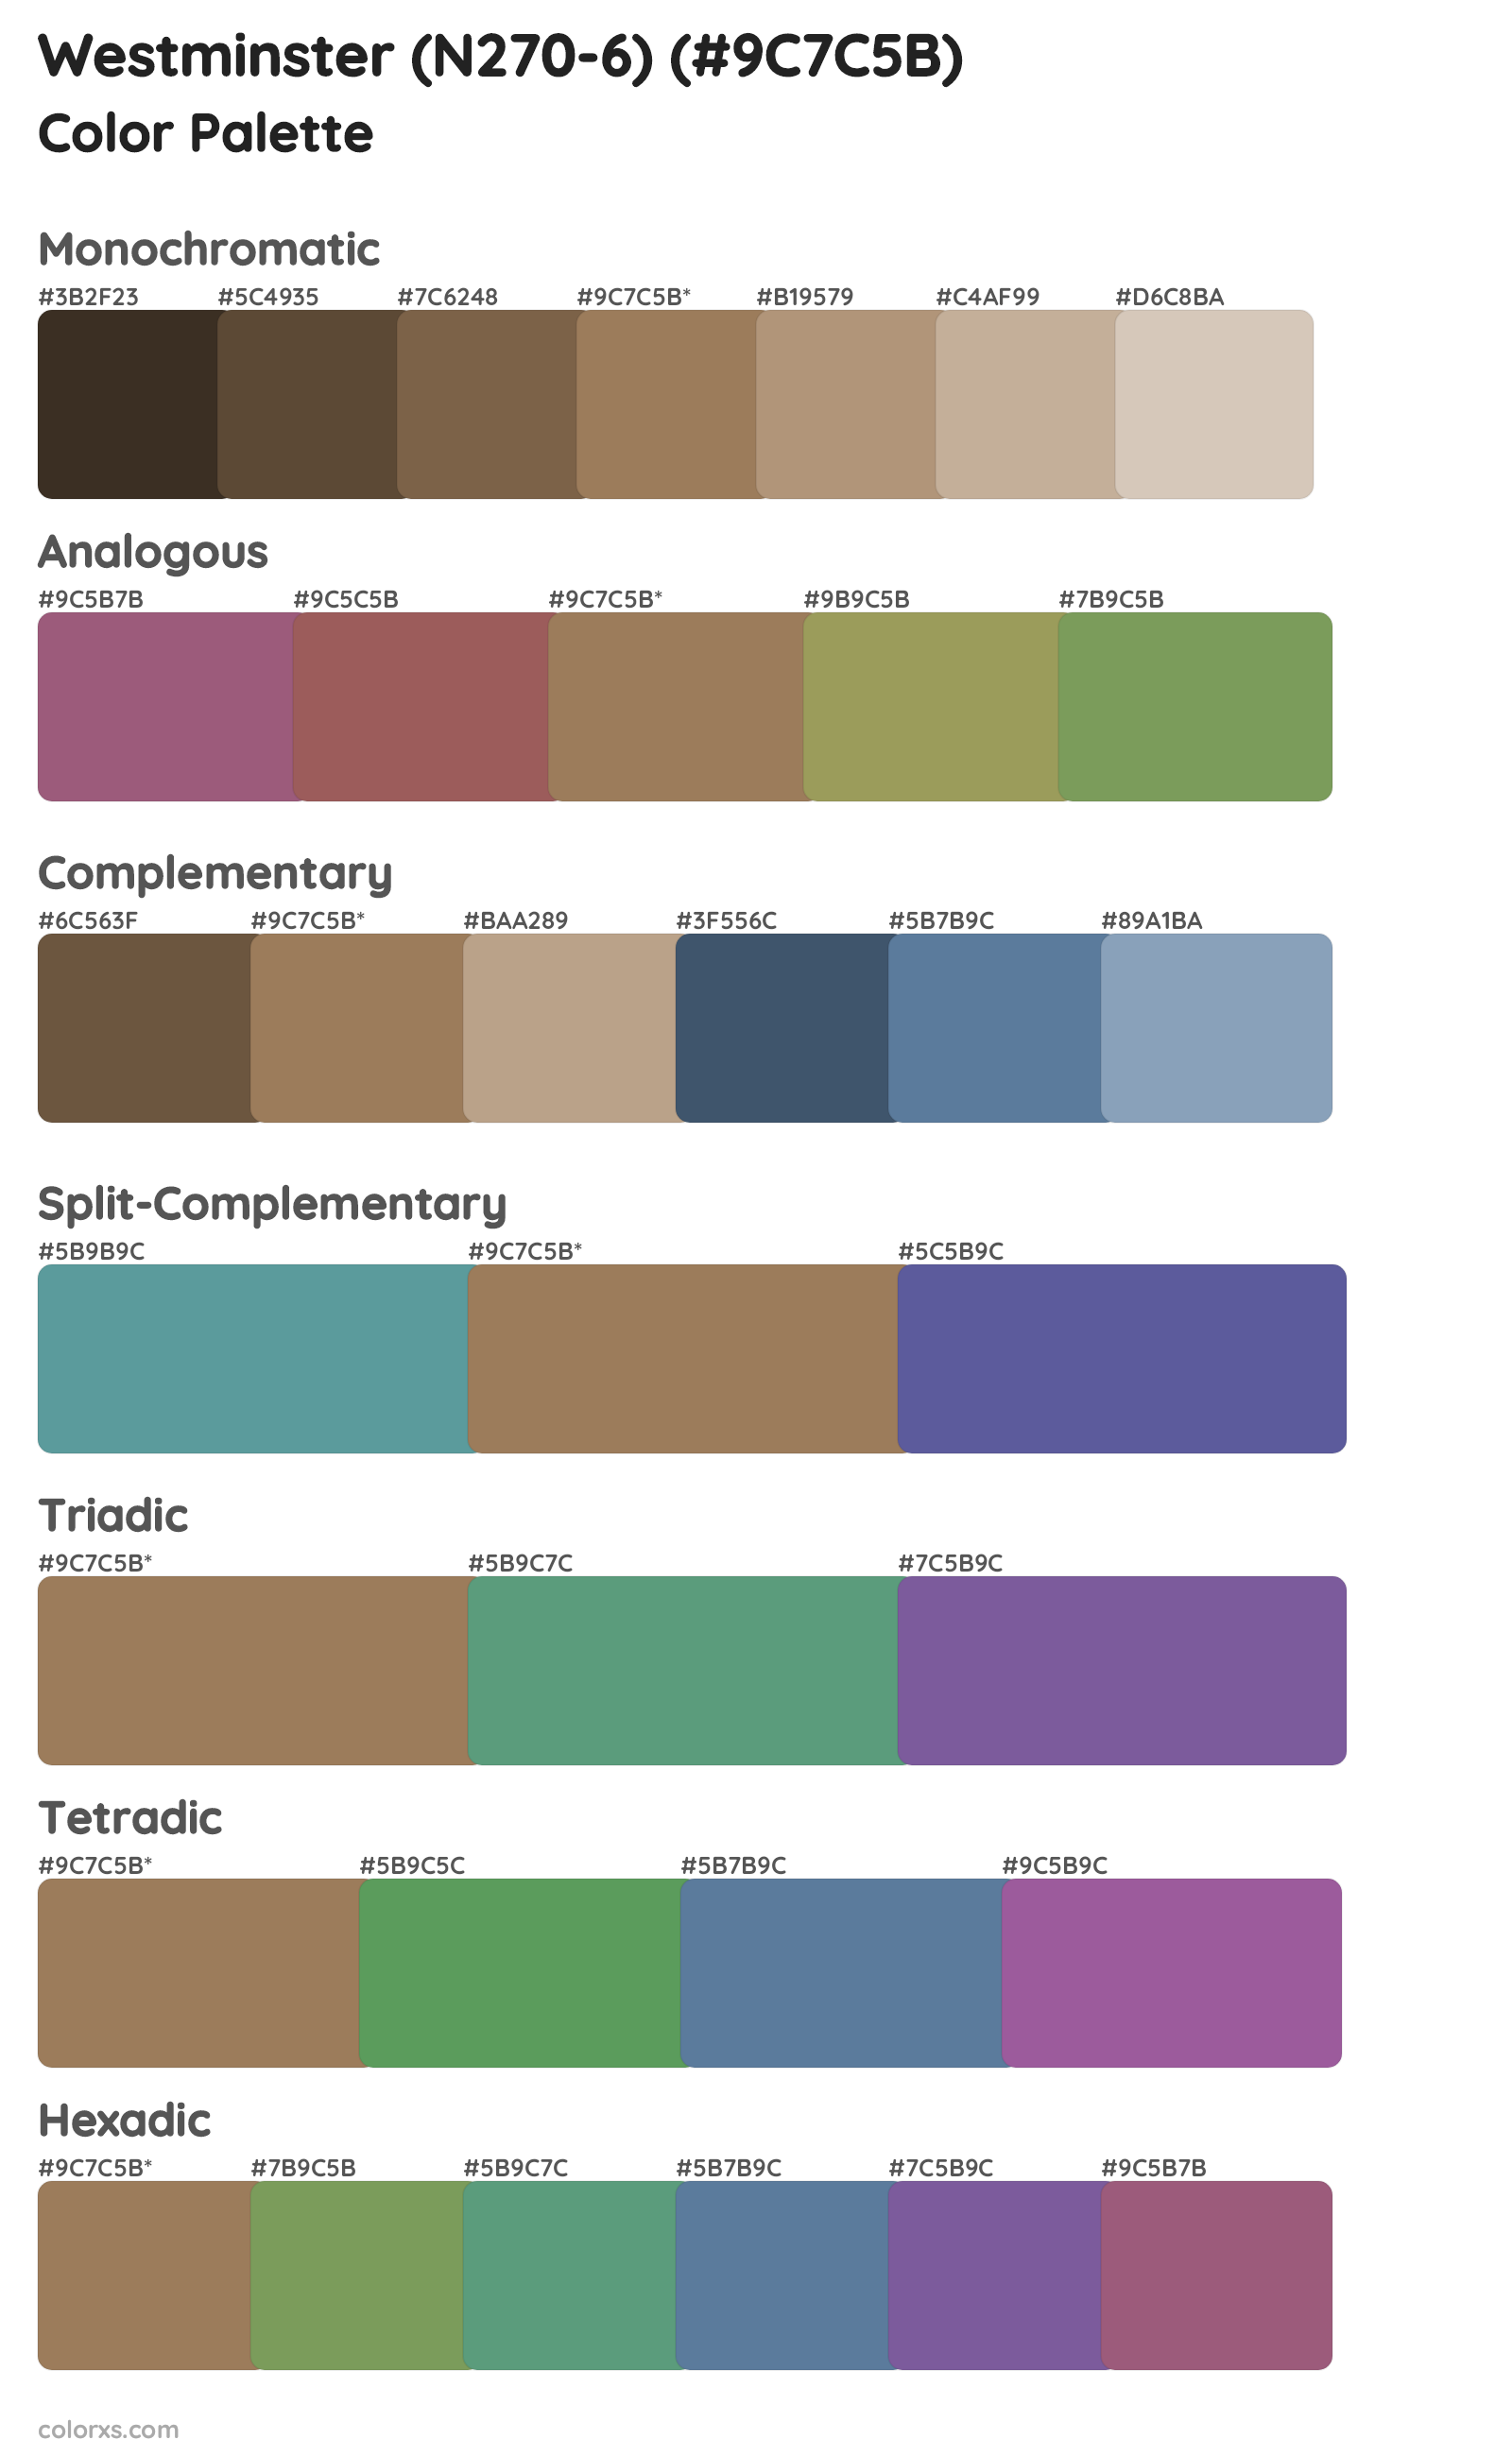 Westminster (N270-6) Color Scheme Palettes